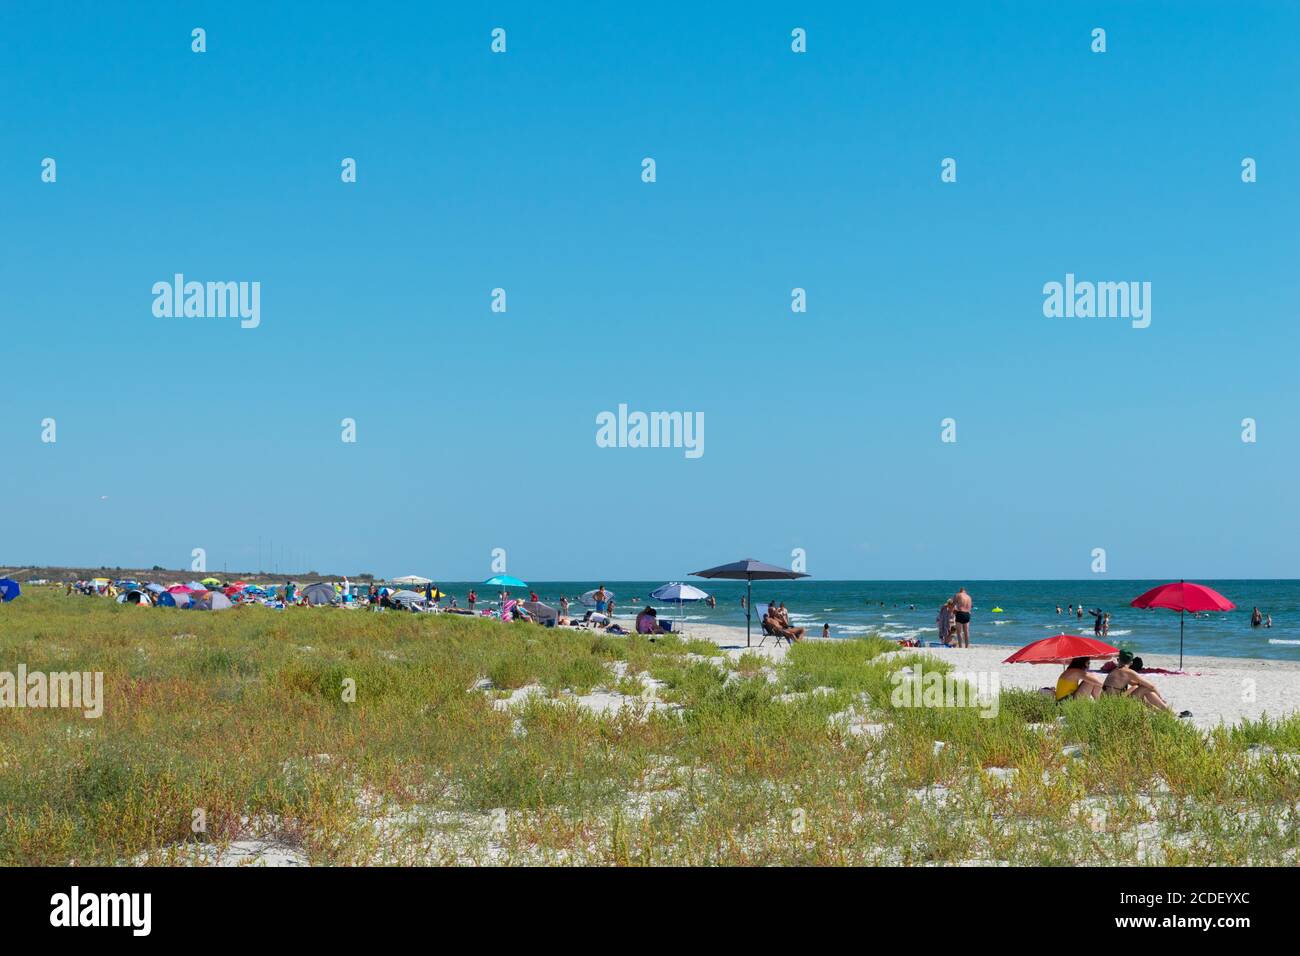 Corbu, Constanta, Romania - 18 agosto 2019: Le persone godono di una rilassante giornata estiva sull'ultima spiaggia virging a Corbu, Romania. Foto Stock